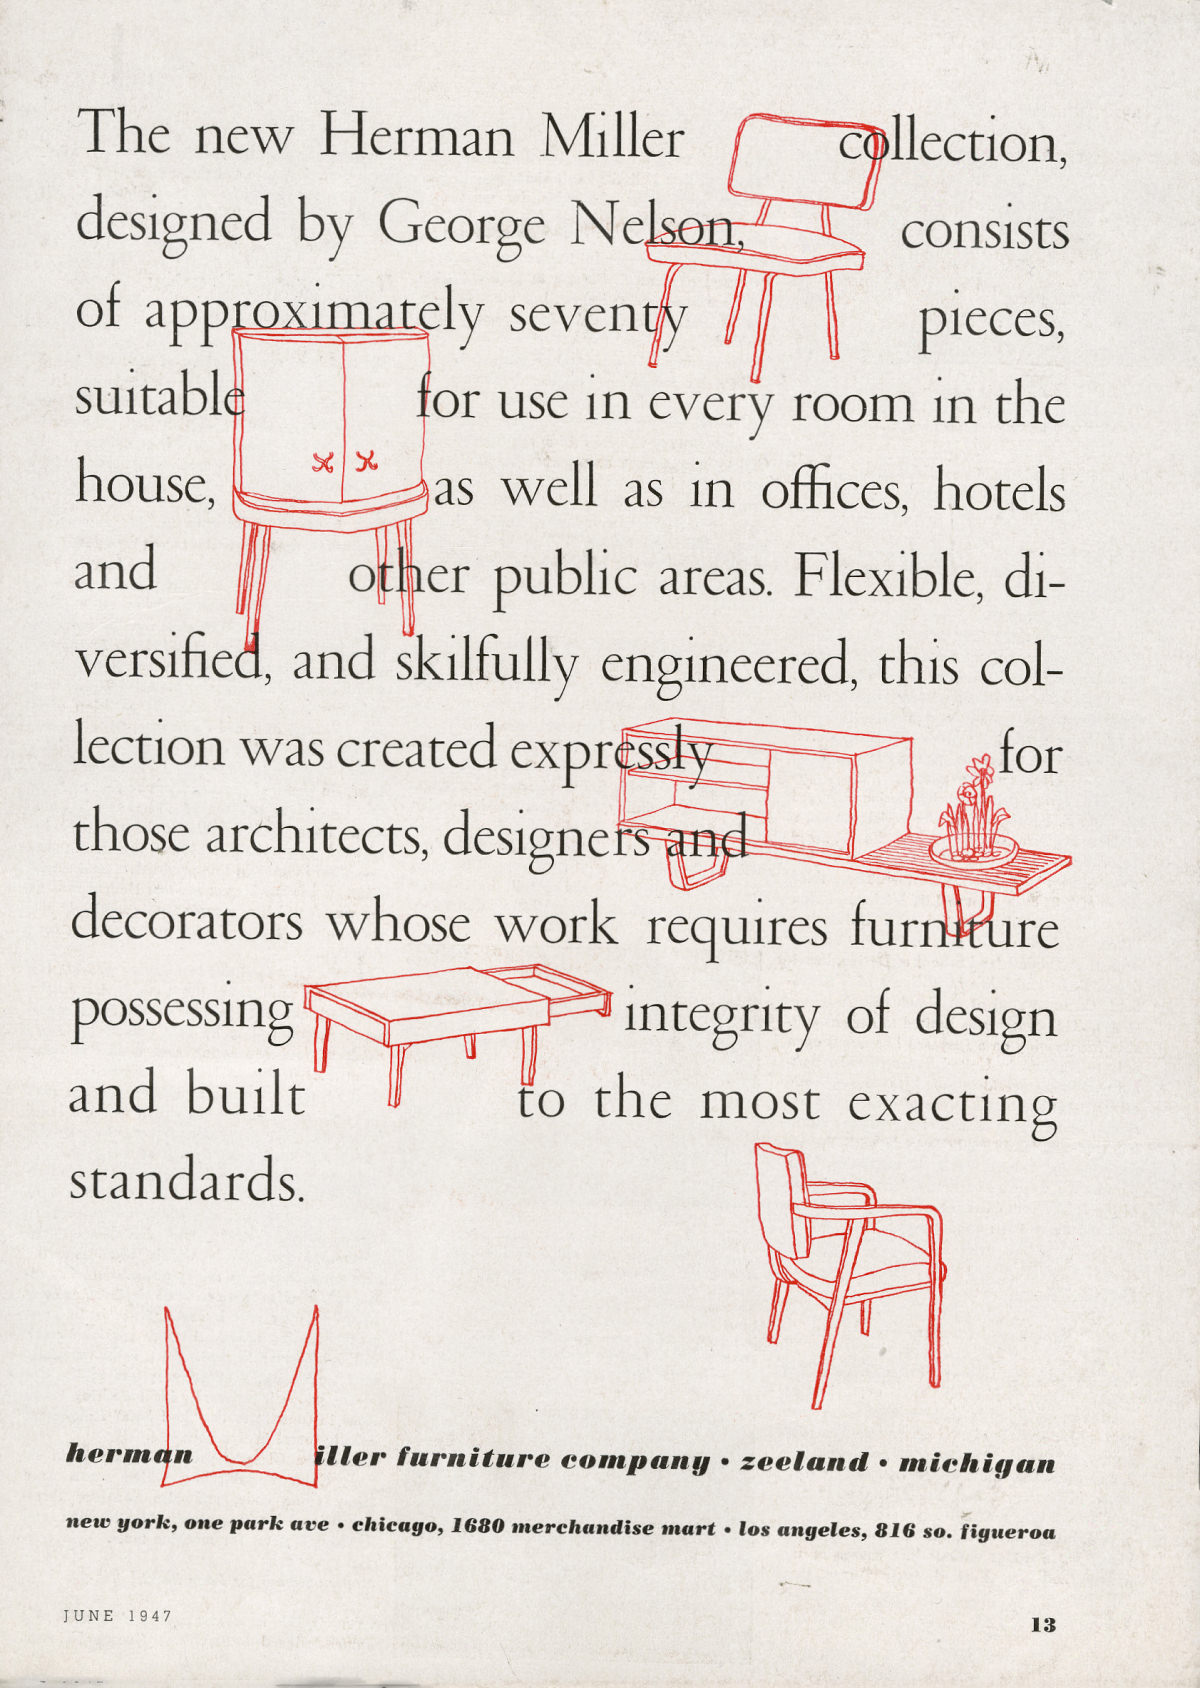 ベーシックキャビネットシリーズのアイテムを含む様々な家具のイラストが、ハーマンミラーにおけるジョージ・ネルソンの最初のコレクションを説明する宣伝用テキストの間に織り込まれている